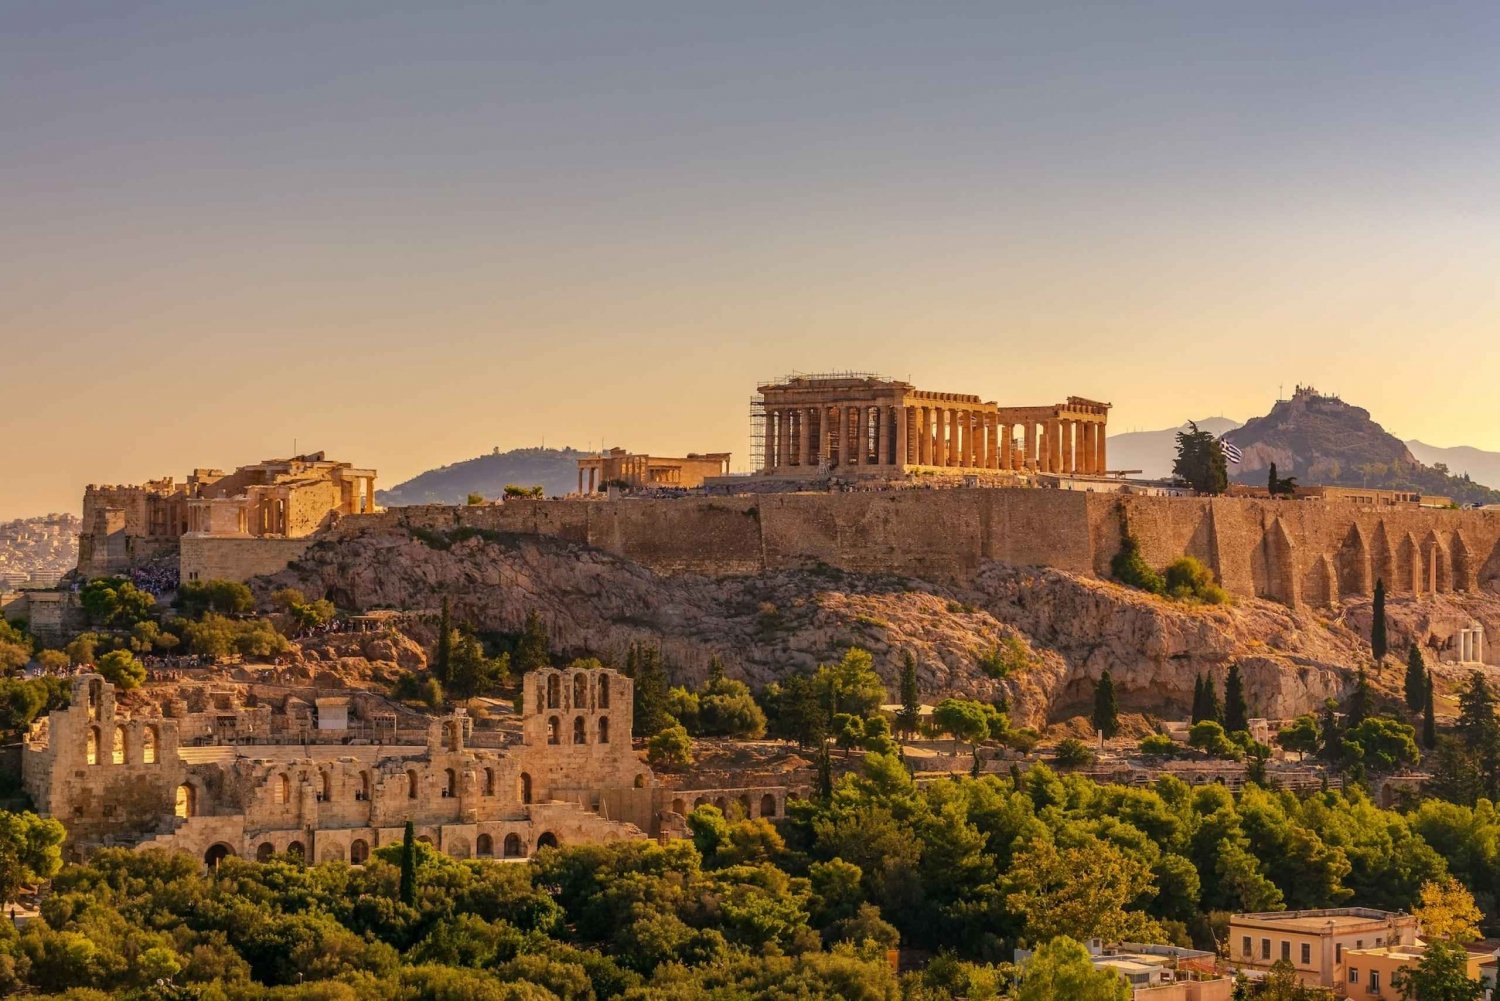 Athen: Selvstændig audioguide til Akropolis' højdepunkter